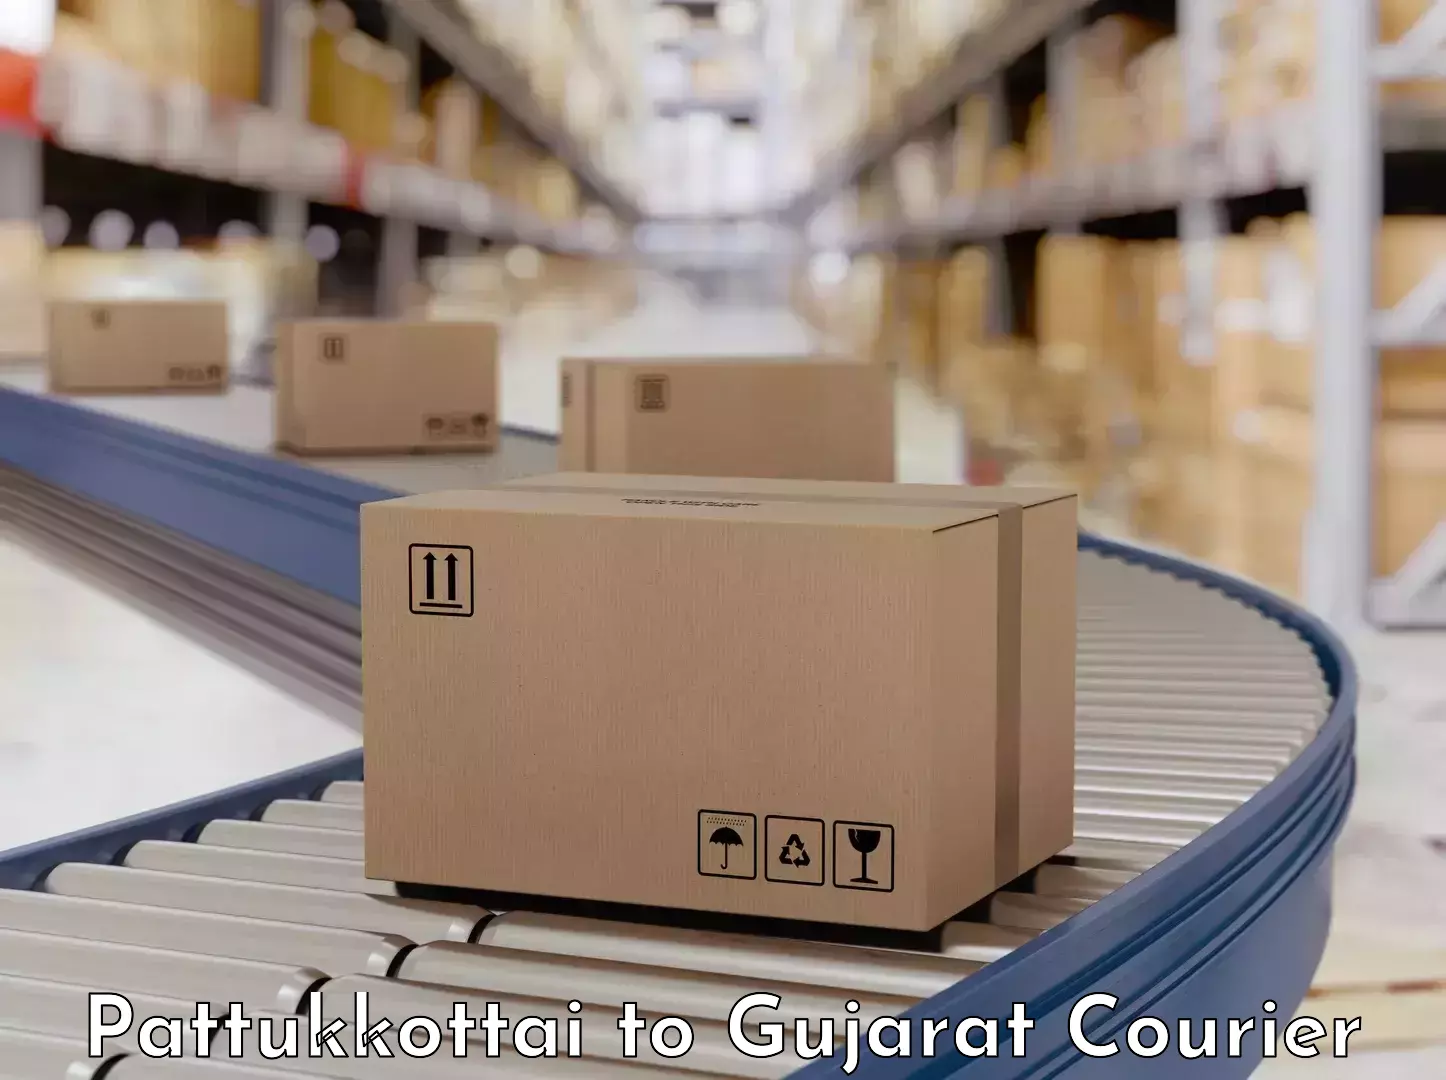 Efficient packing and moving Pattukkottai to Gujarat